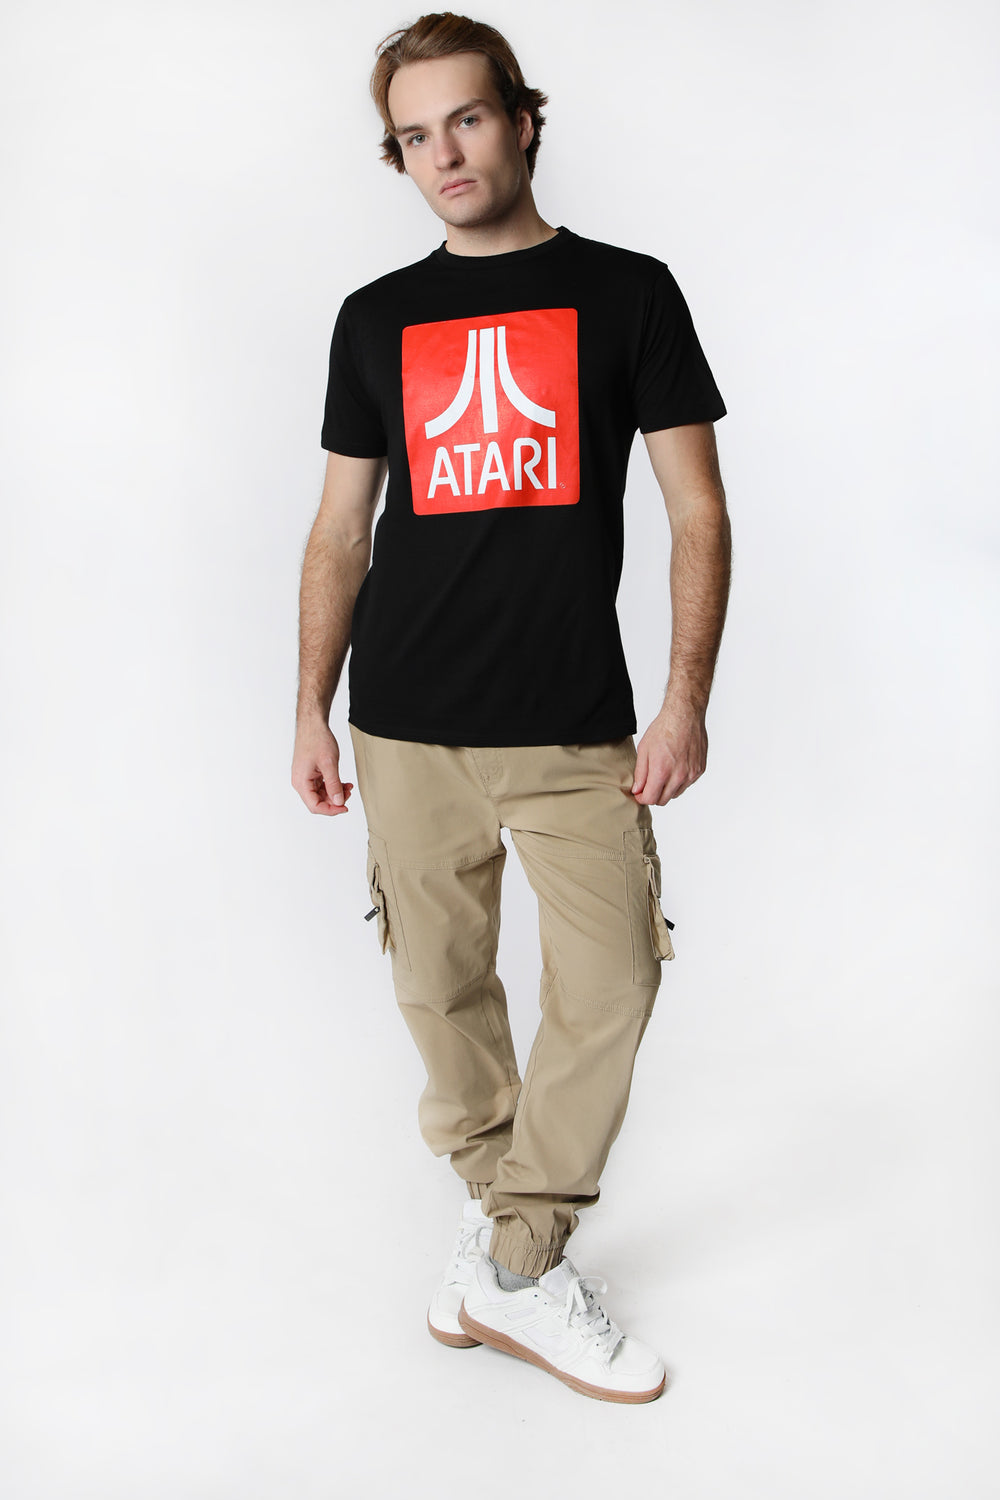 Mens Atari Logo T-Shirt Mens Atari Logo T-Shirt